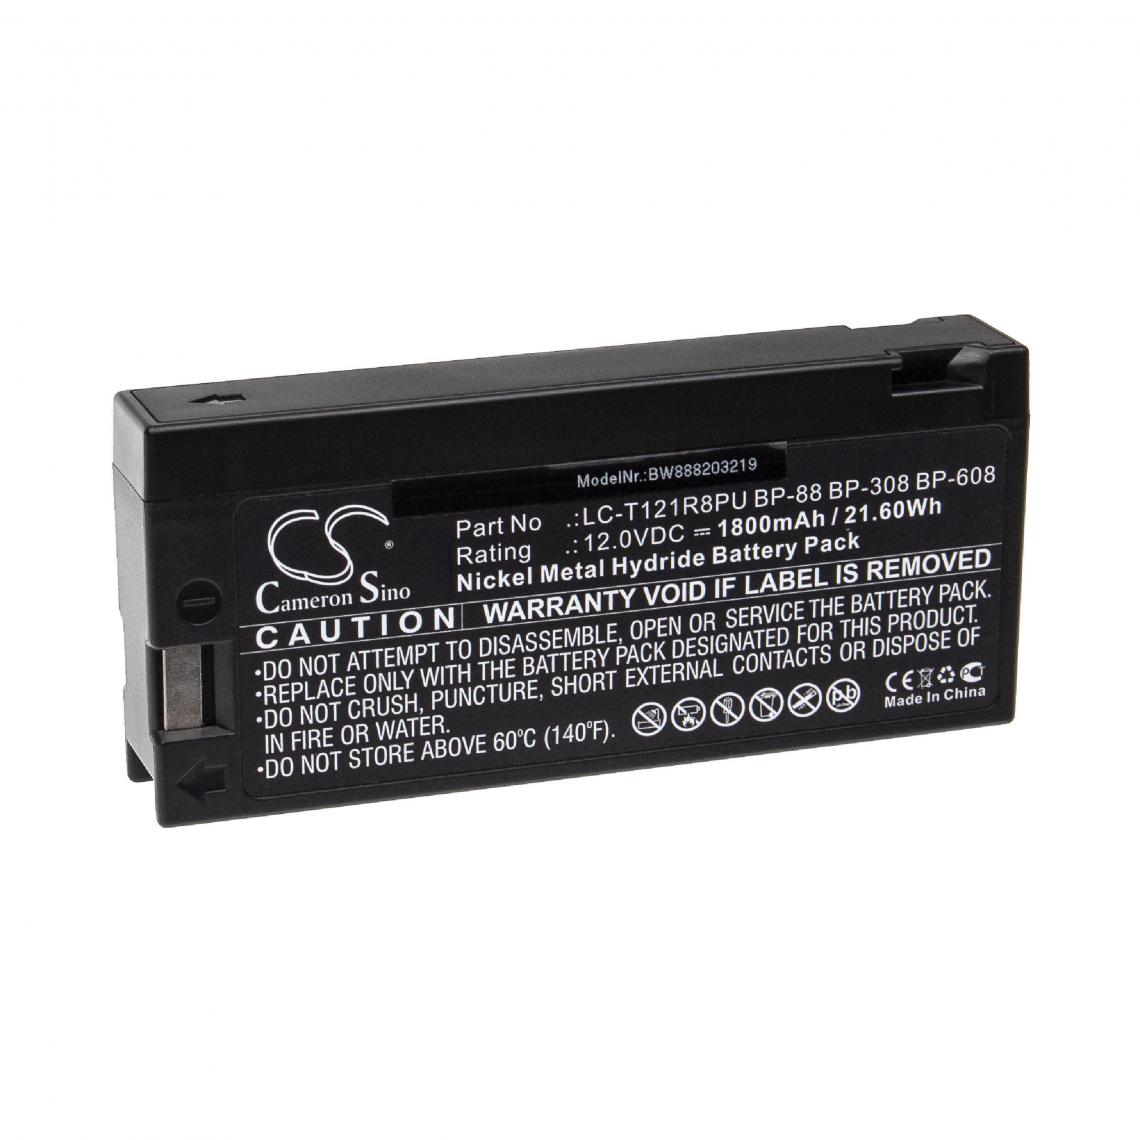 Vhbw - vhbw Batterie compatible avec CHINON CVBP89, CVT84 appareil médical (1800mAh, 12V, NiMH) - Piles spécifiques